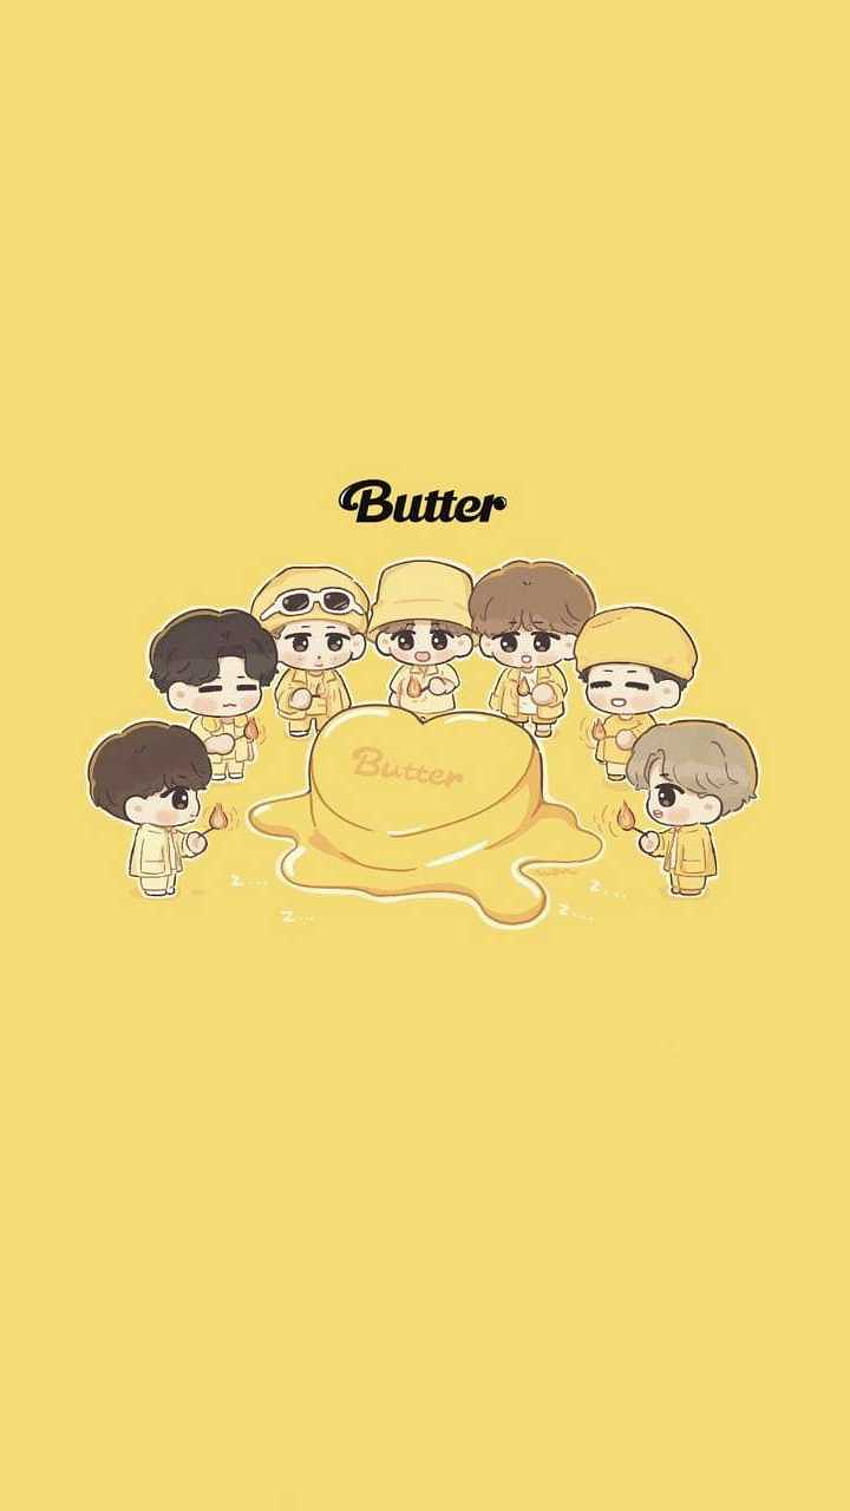 BTS vừa mới phát hành bài hát Butter gây bão trên toàn thế giới. Vì thế, điều tuyệt vời nhất mà bạn có thể làm bây giờ là sở hữu một bức ảnh nền BTS Butter làm nền cho thiết bị của bạn. Hãy xem bức ảnh liên quan đến từ khóa \